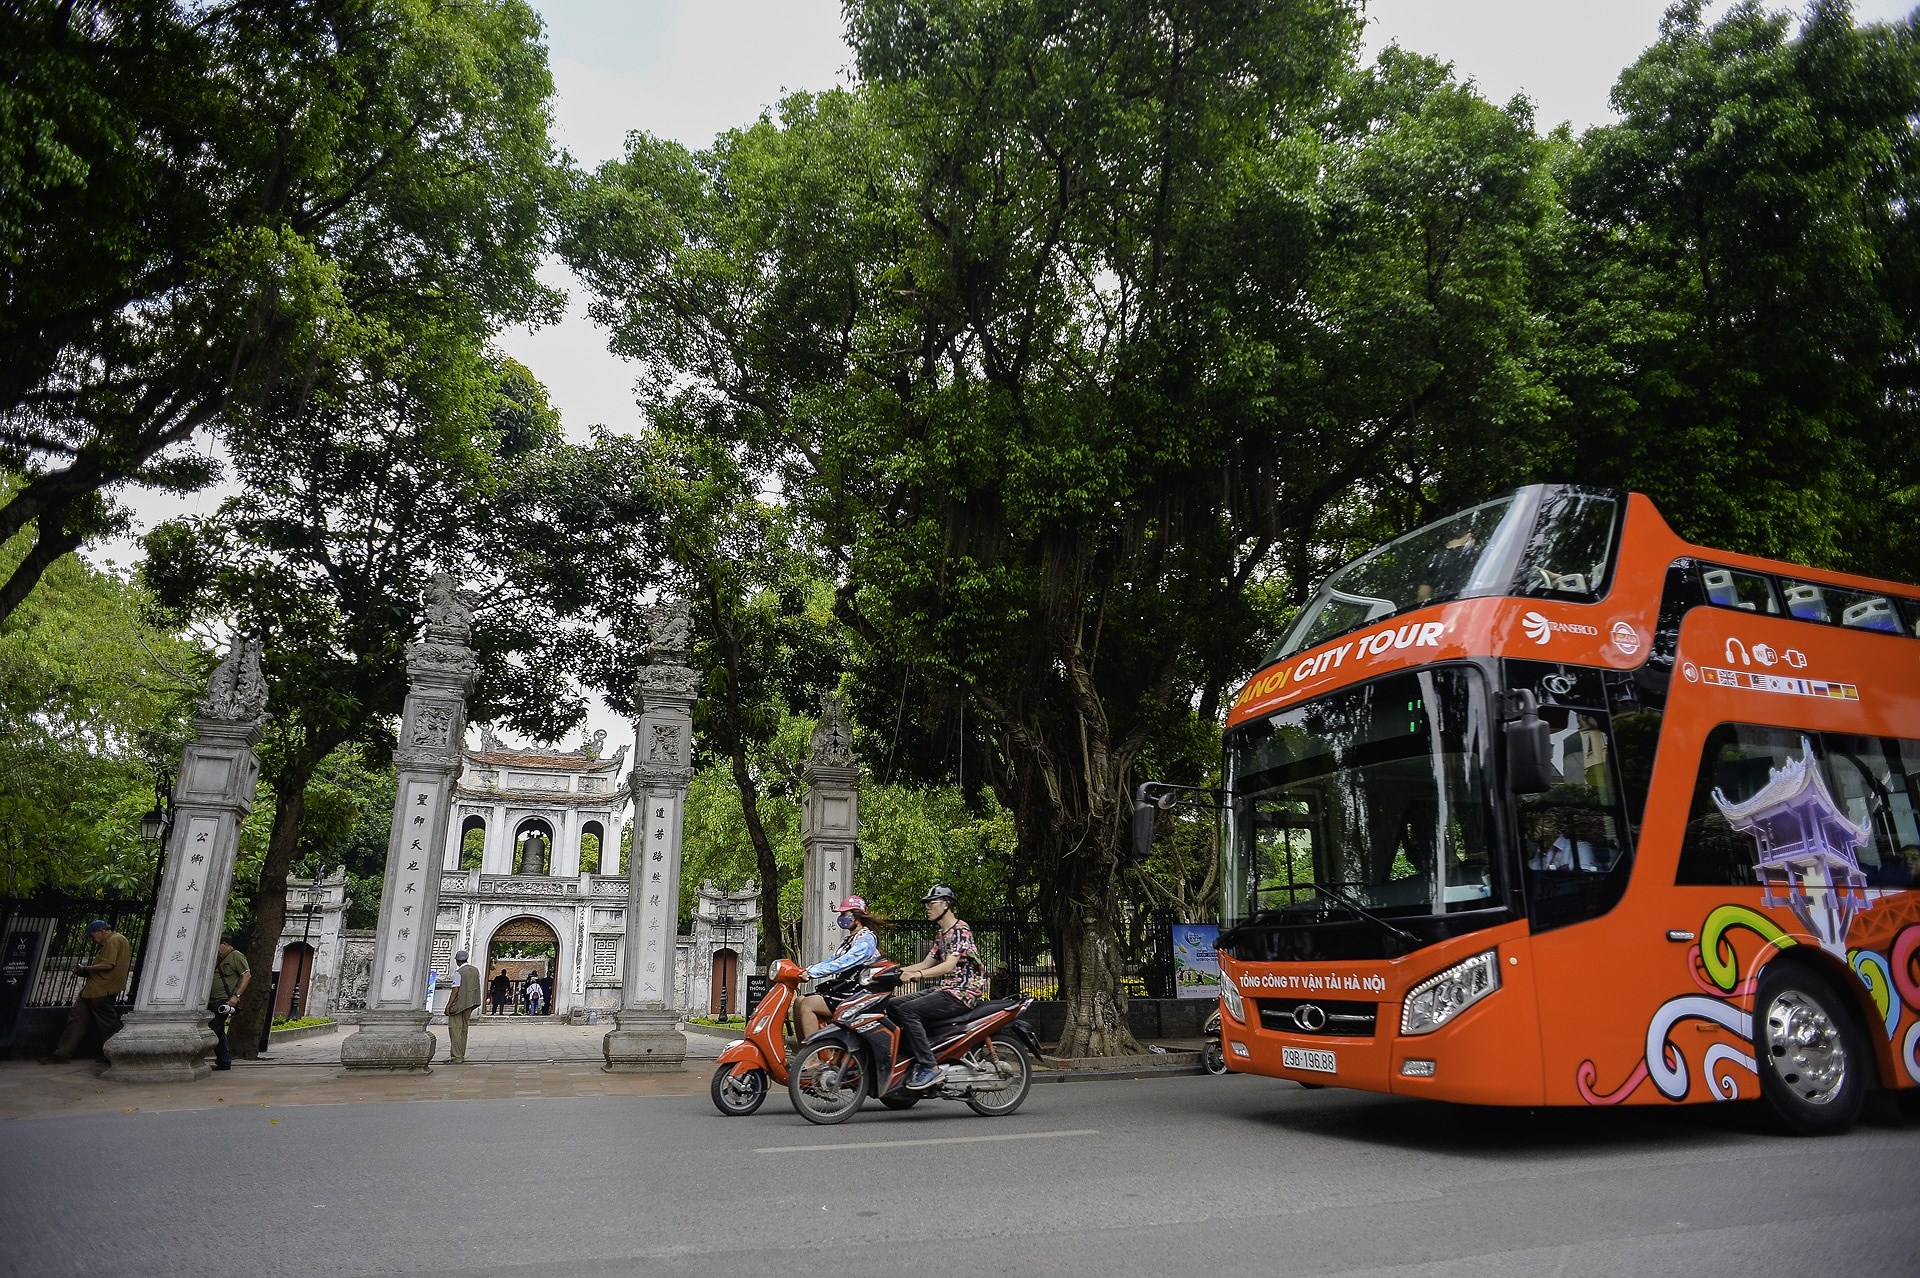 Decouvrir Hanoi a partir des bus a imperiale hinh anh 10